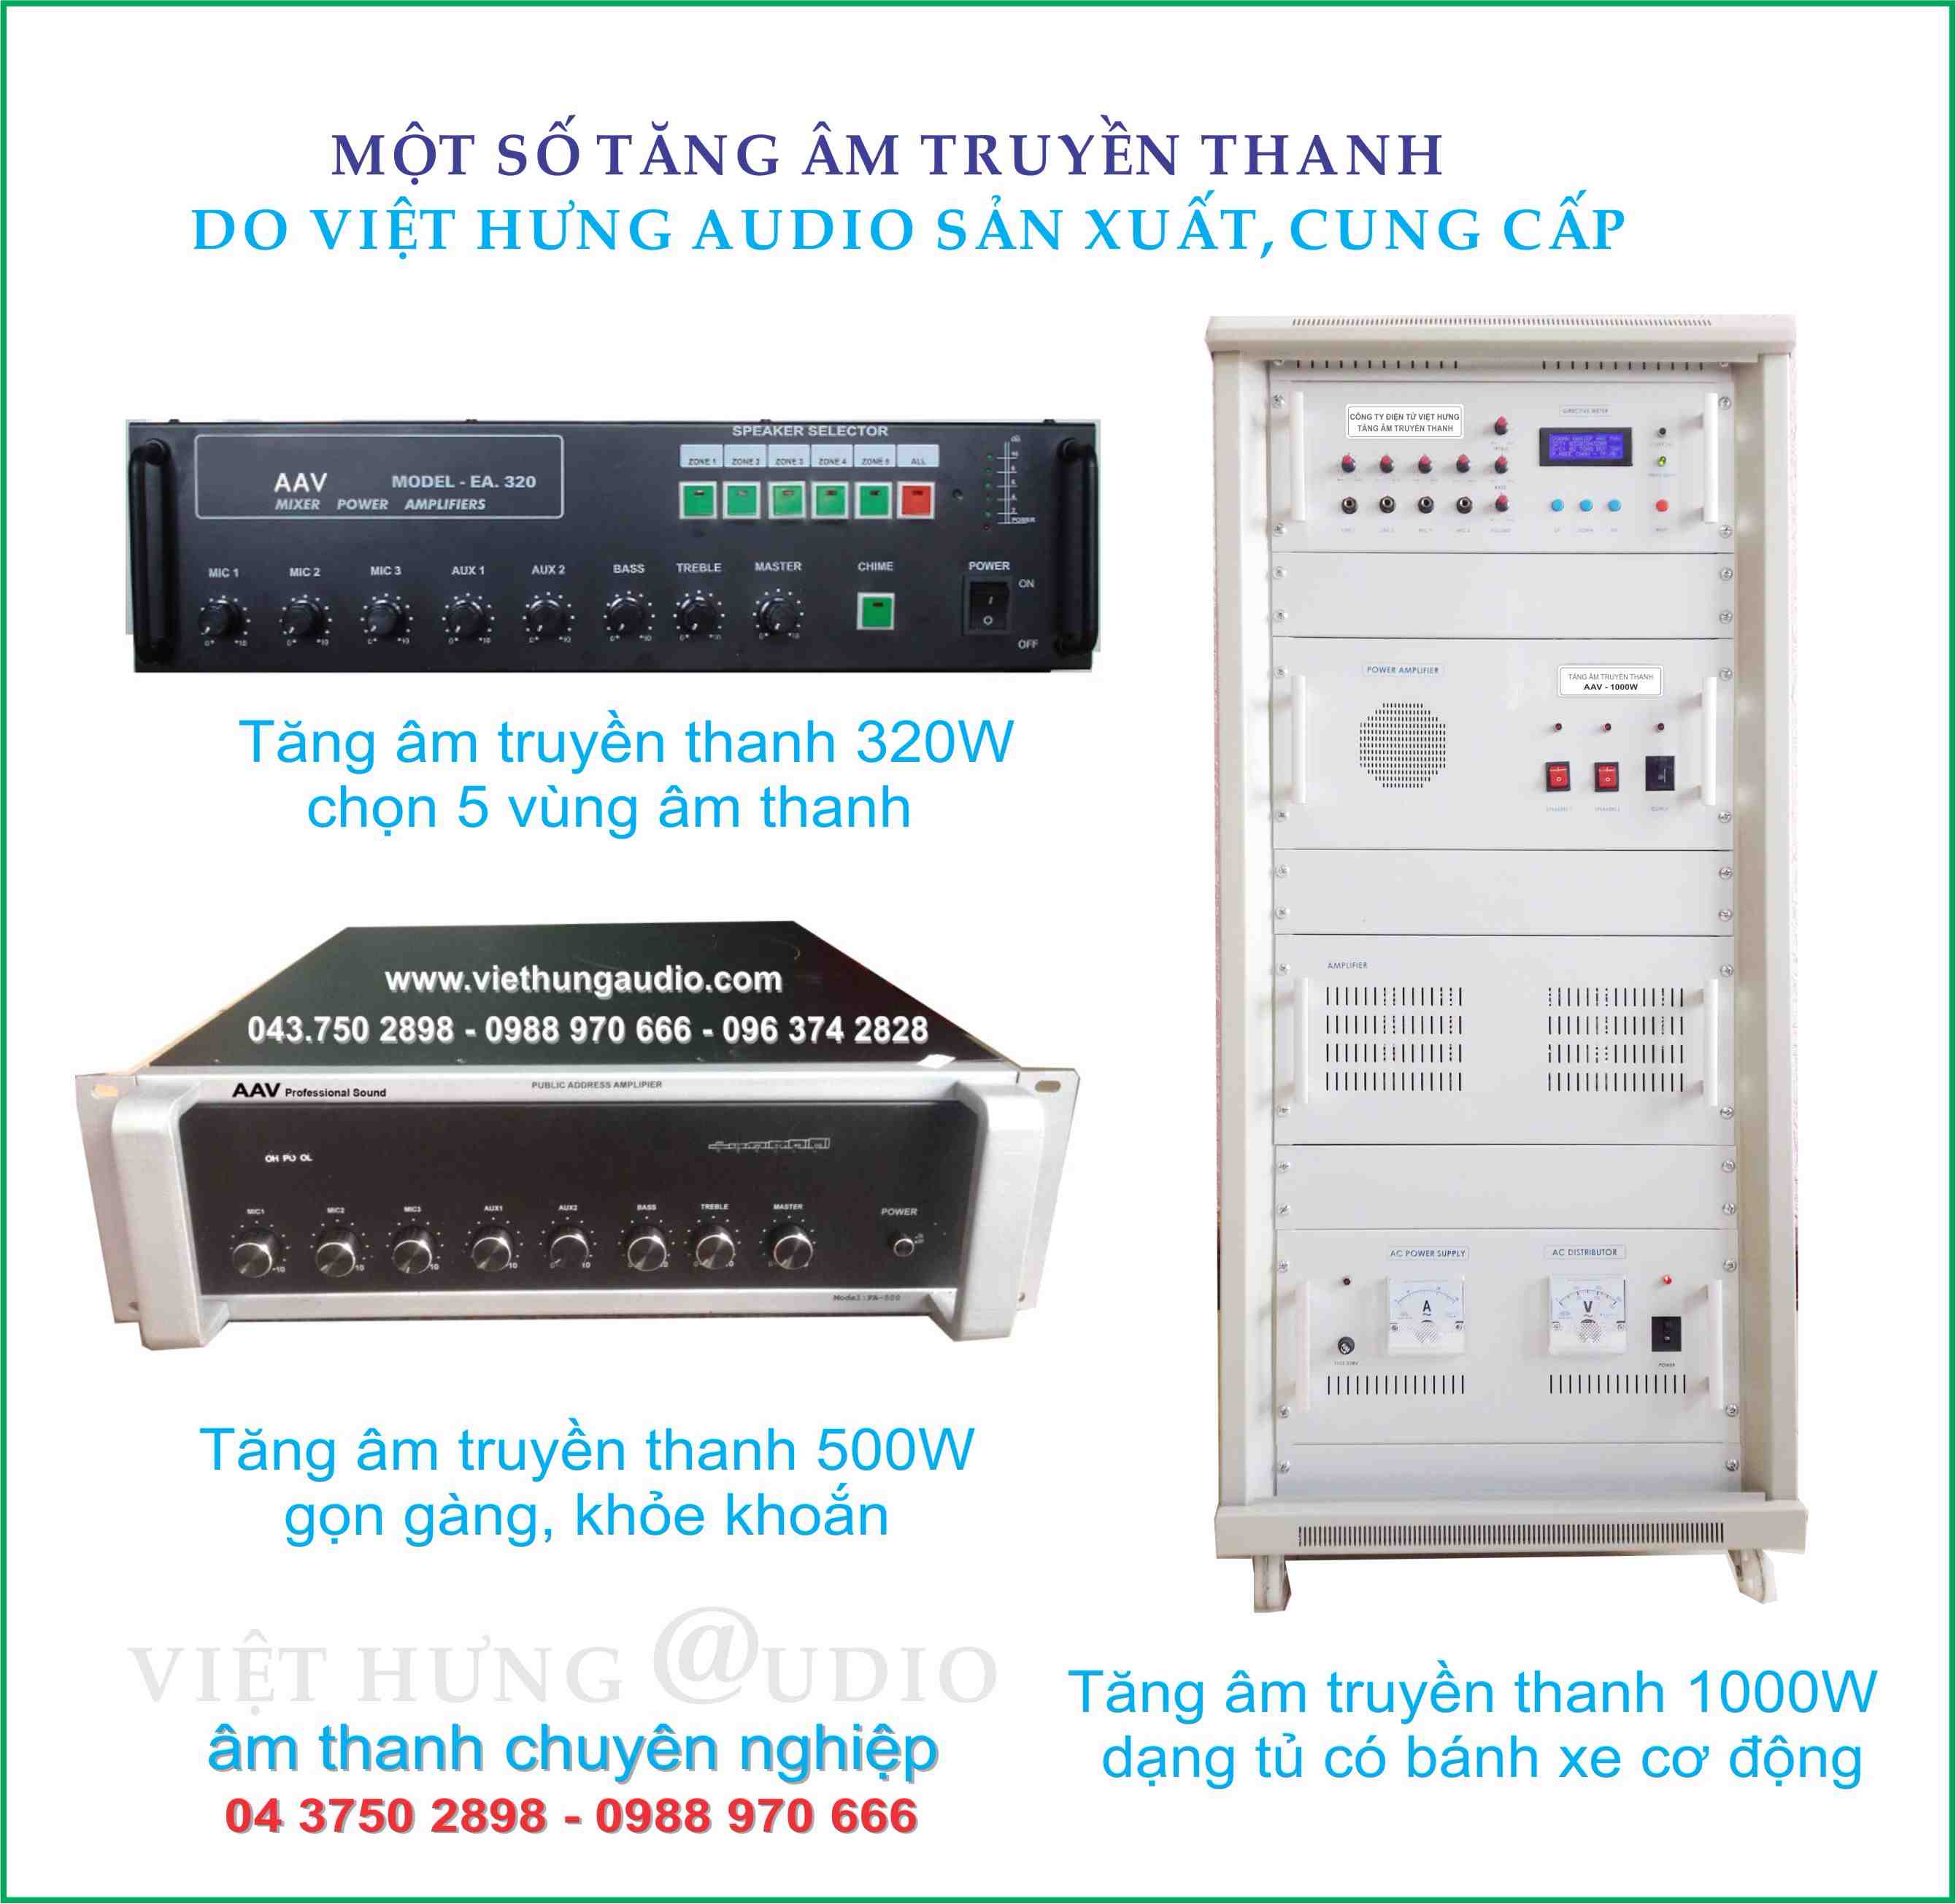 Các sản phẩm tăng âm truyền thanh AAV Việt Hưng Audio 